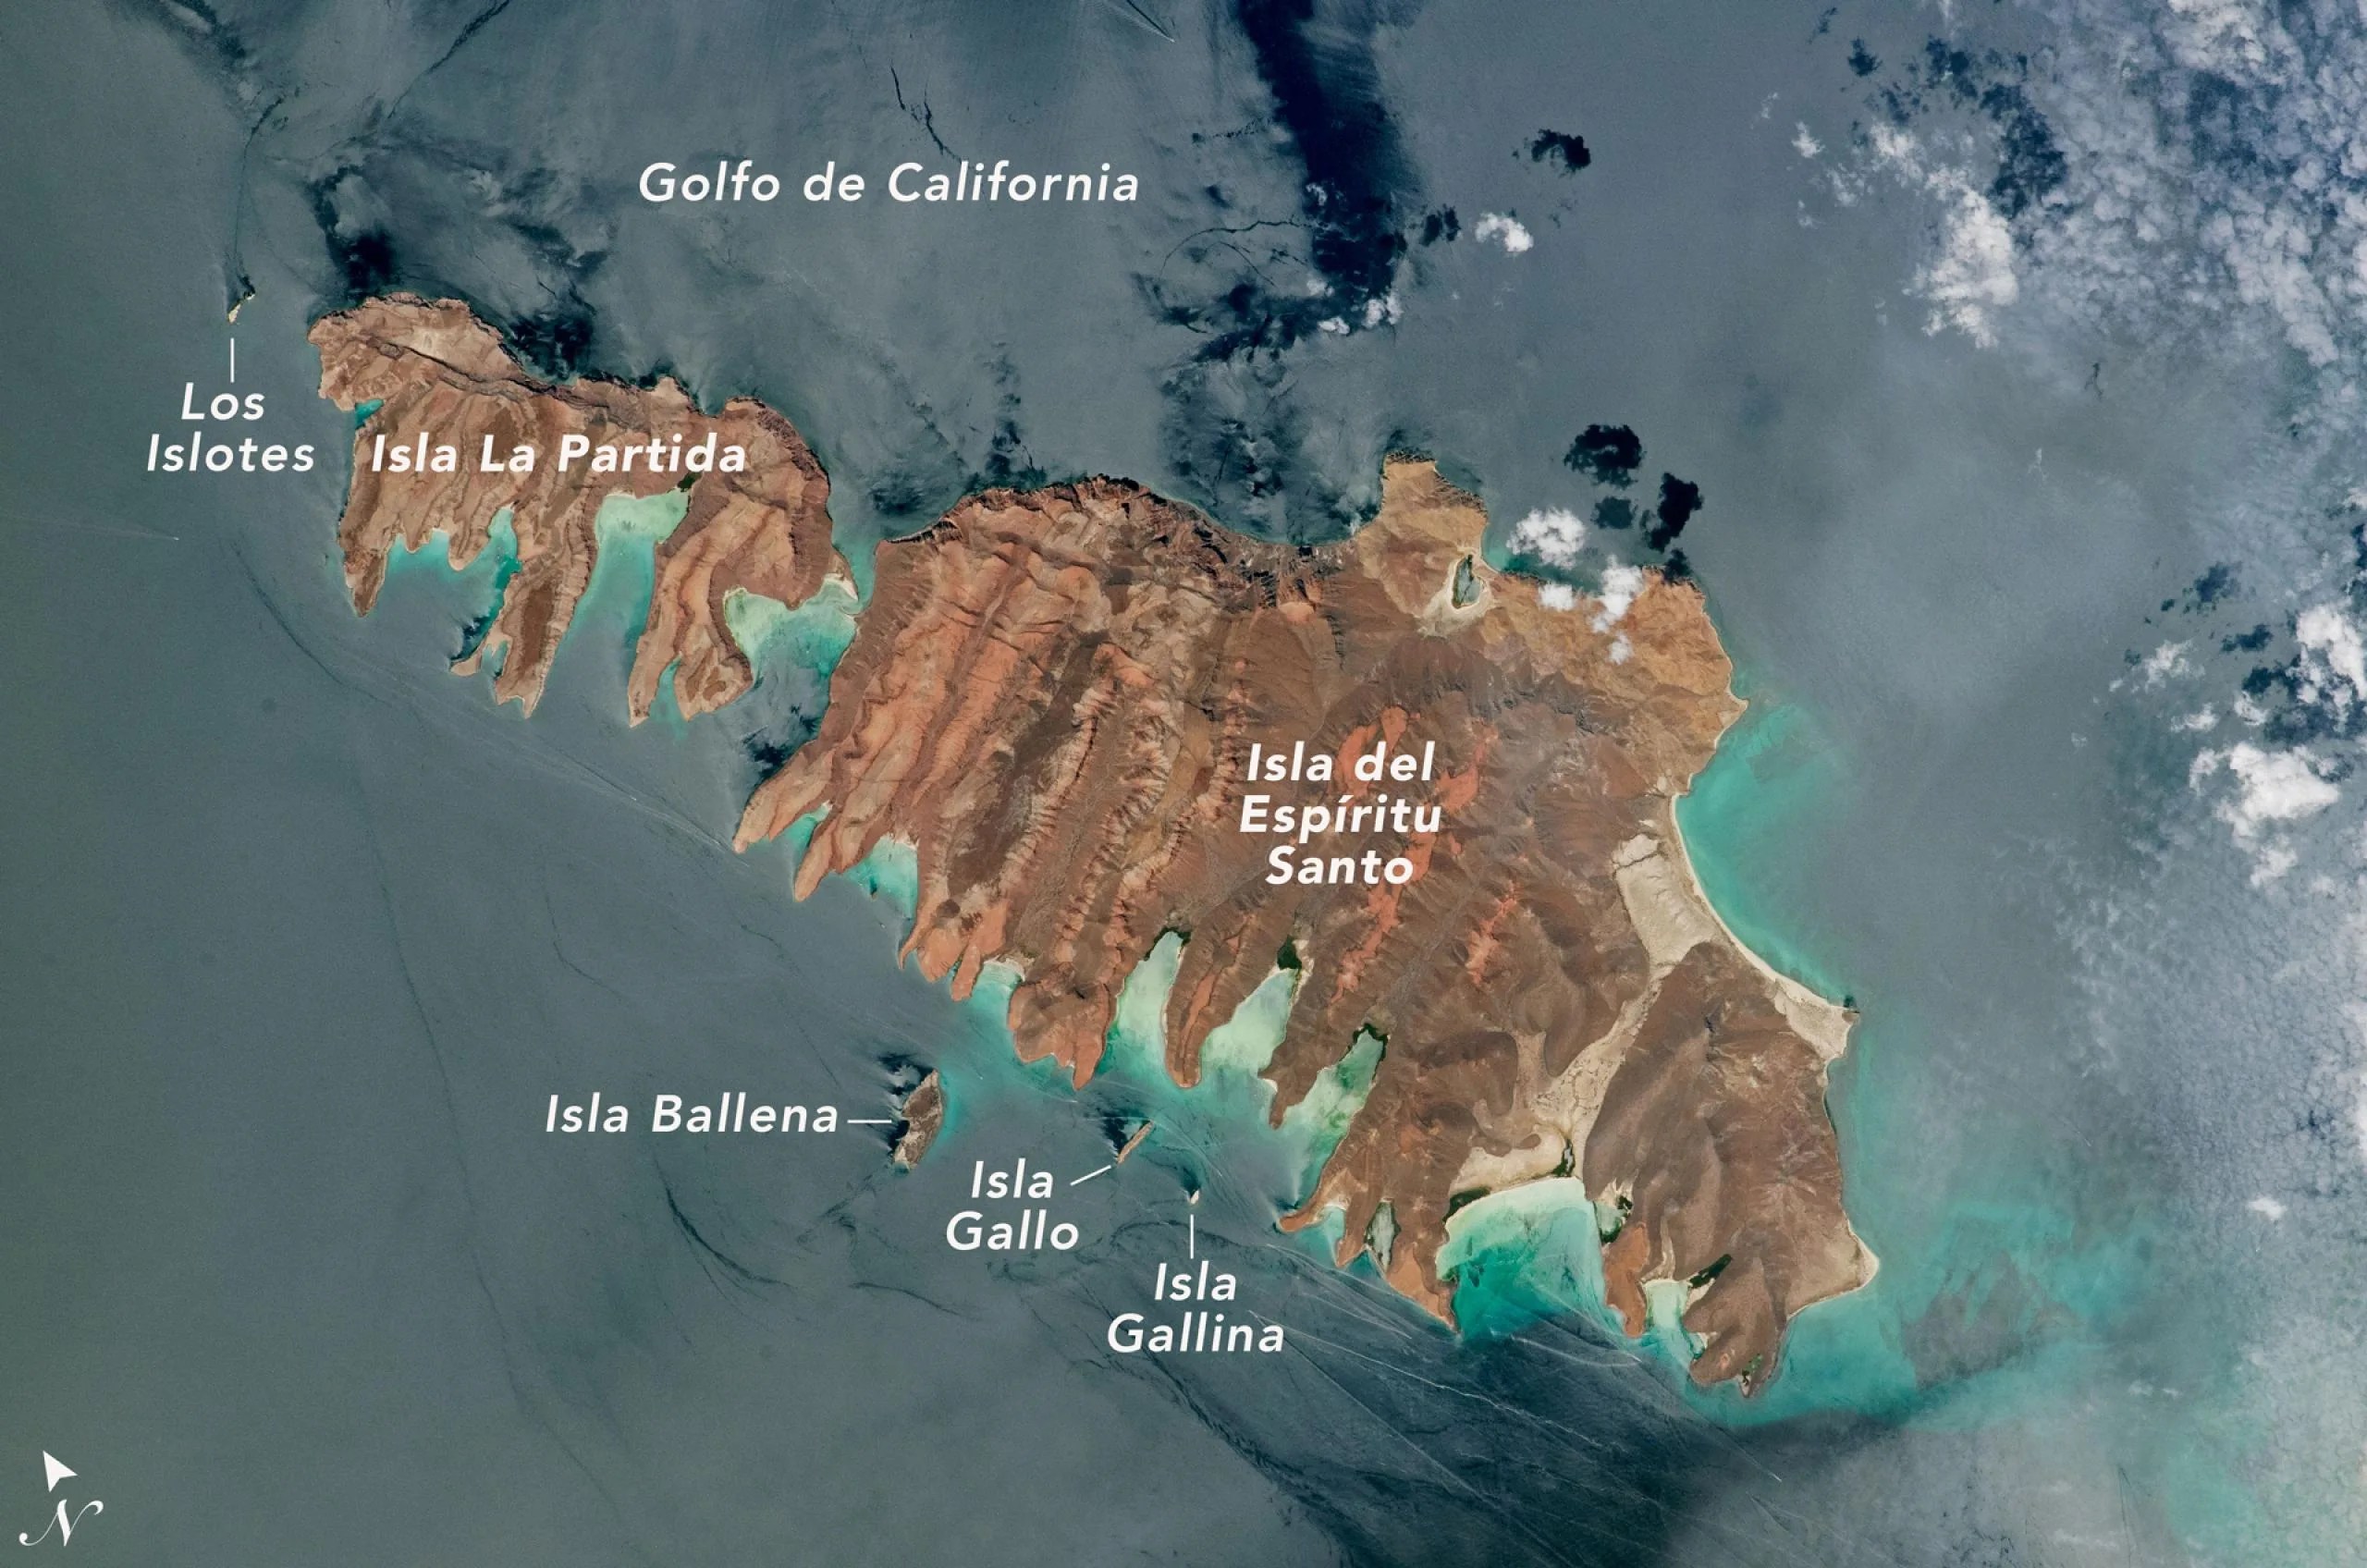 Imagen del archipiélago de Espíritu Santo obtenida desde la Estación Espacial Internacional.